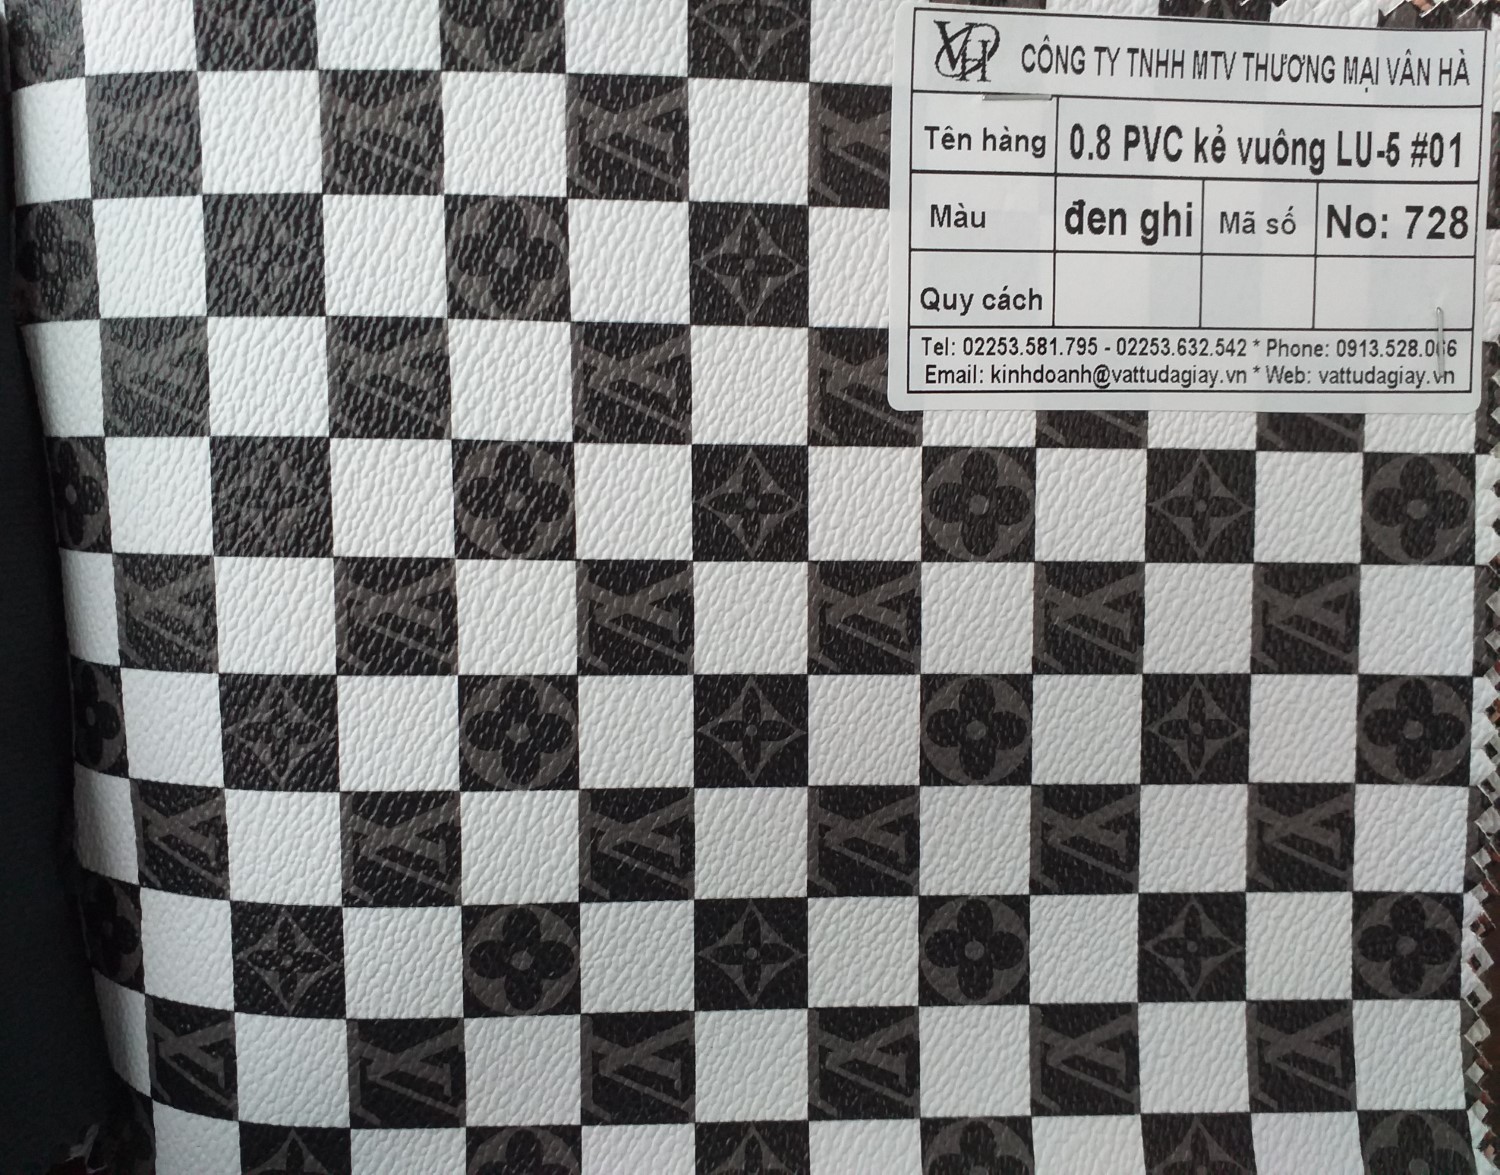 08 pvc kẻ vuông đen ghi lu 51 mã 728 - 0.8 PVC kẻ vuông đen ghi LU-5#1 mã 728